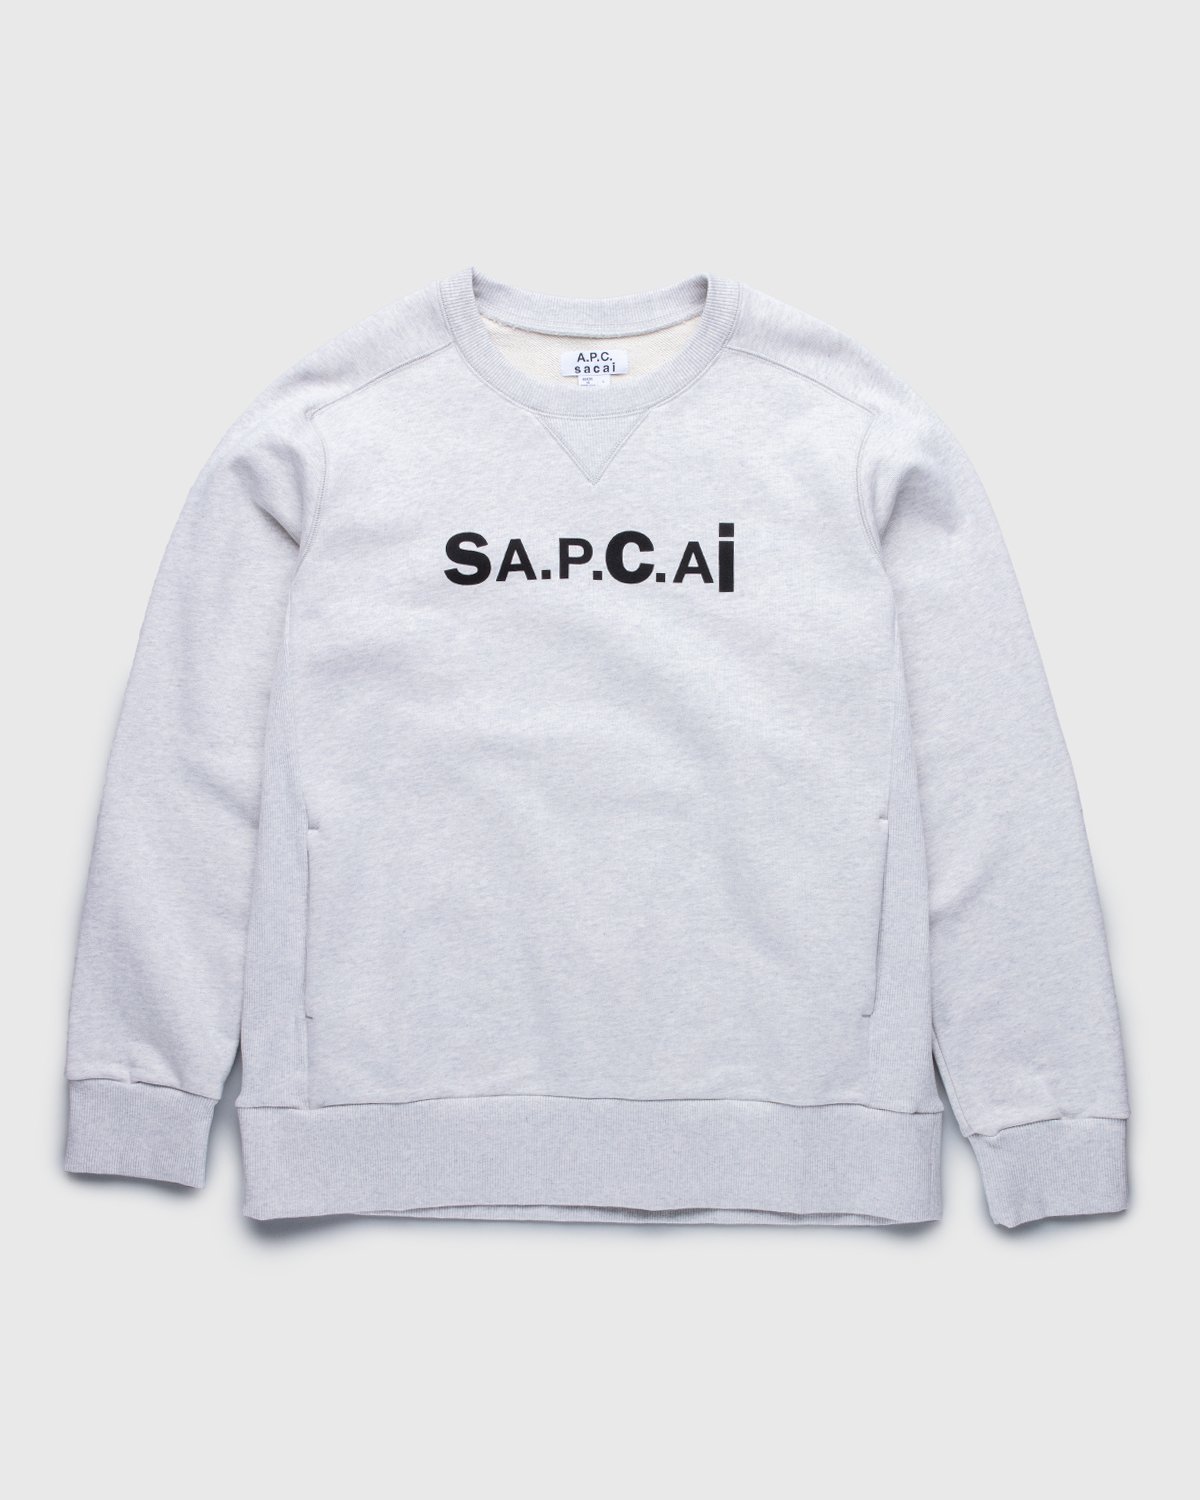 A.P.C. x Sacai - Tani Sweater Light Grey - Clothing - Grey - Image 1